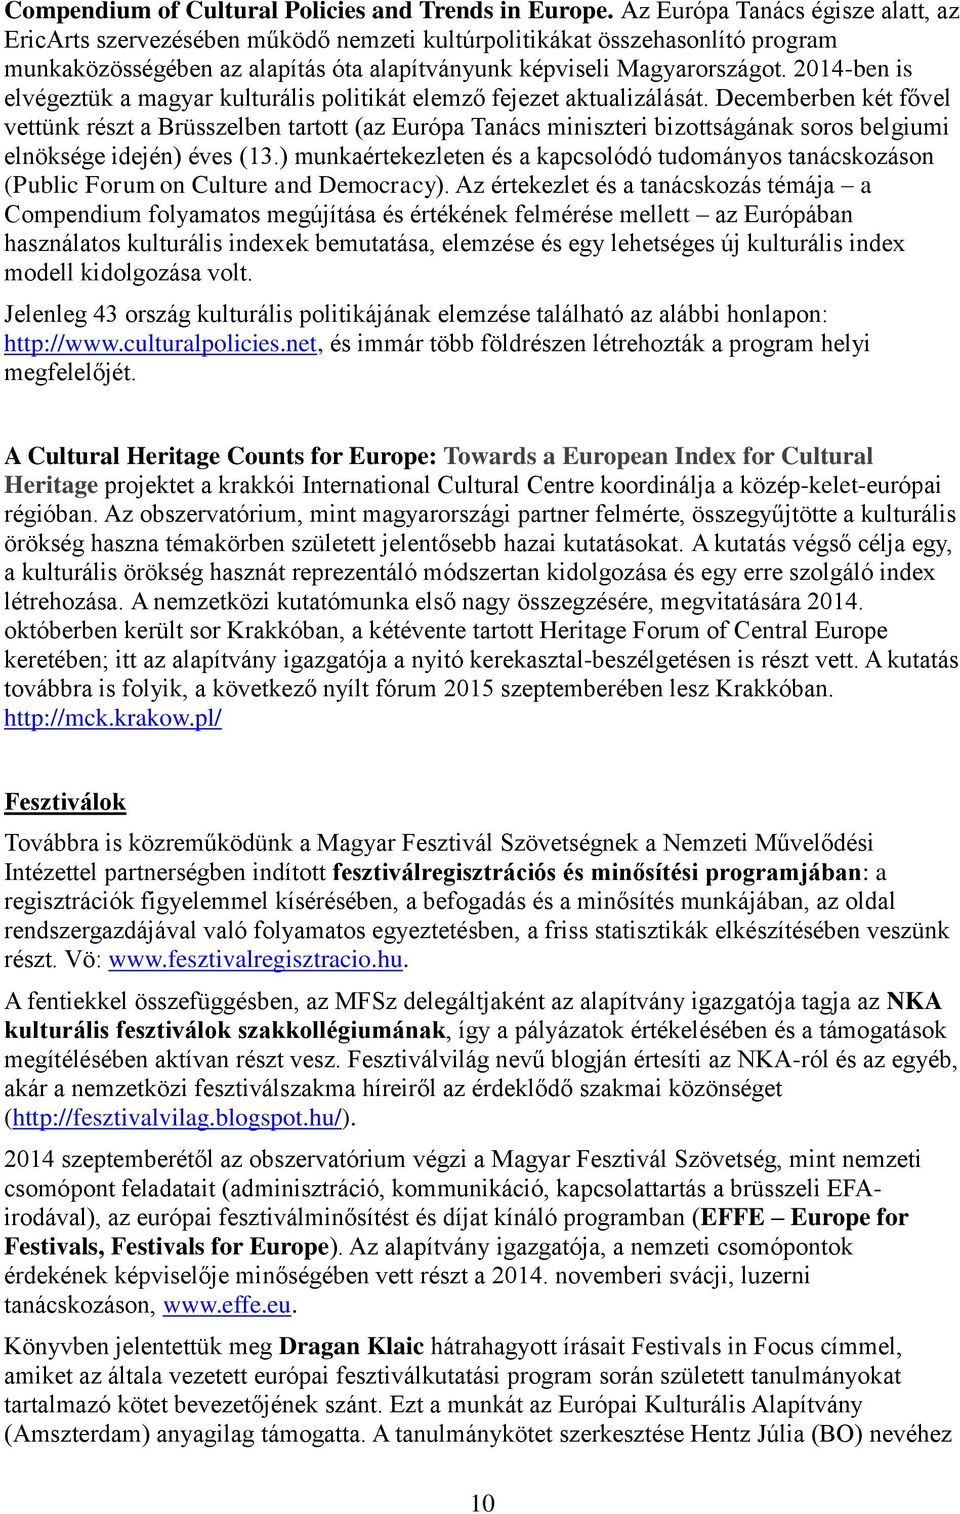 2014-ben is elvégeztük a magyar kulturális politikát elemző fejezet aktualizálását.